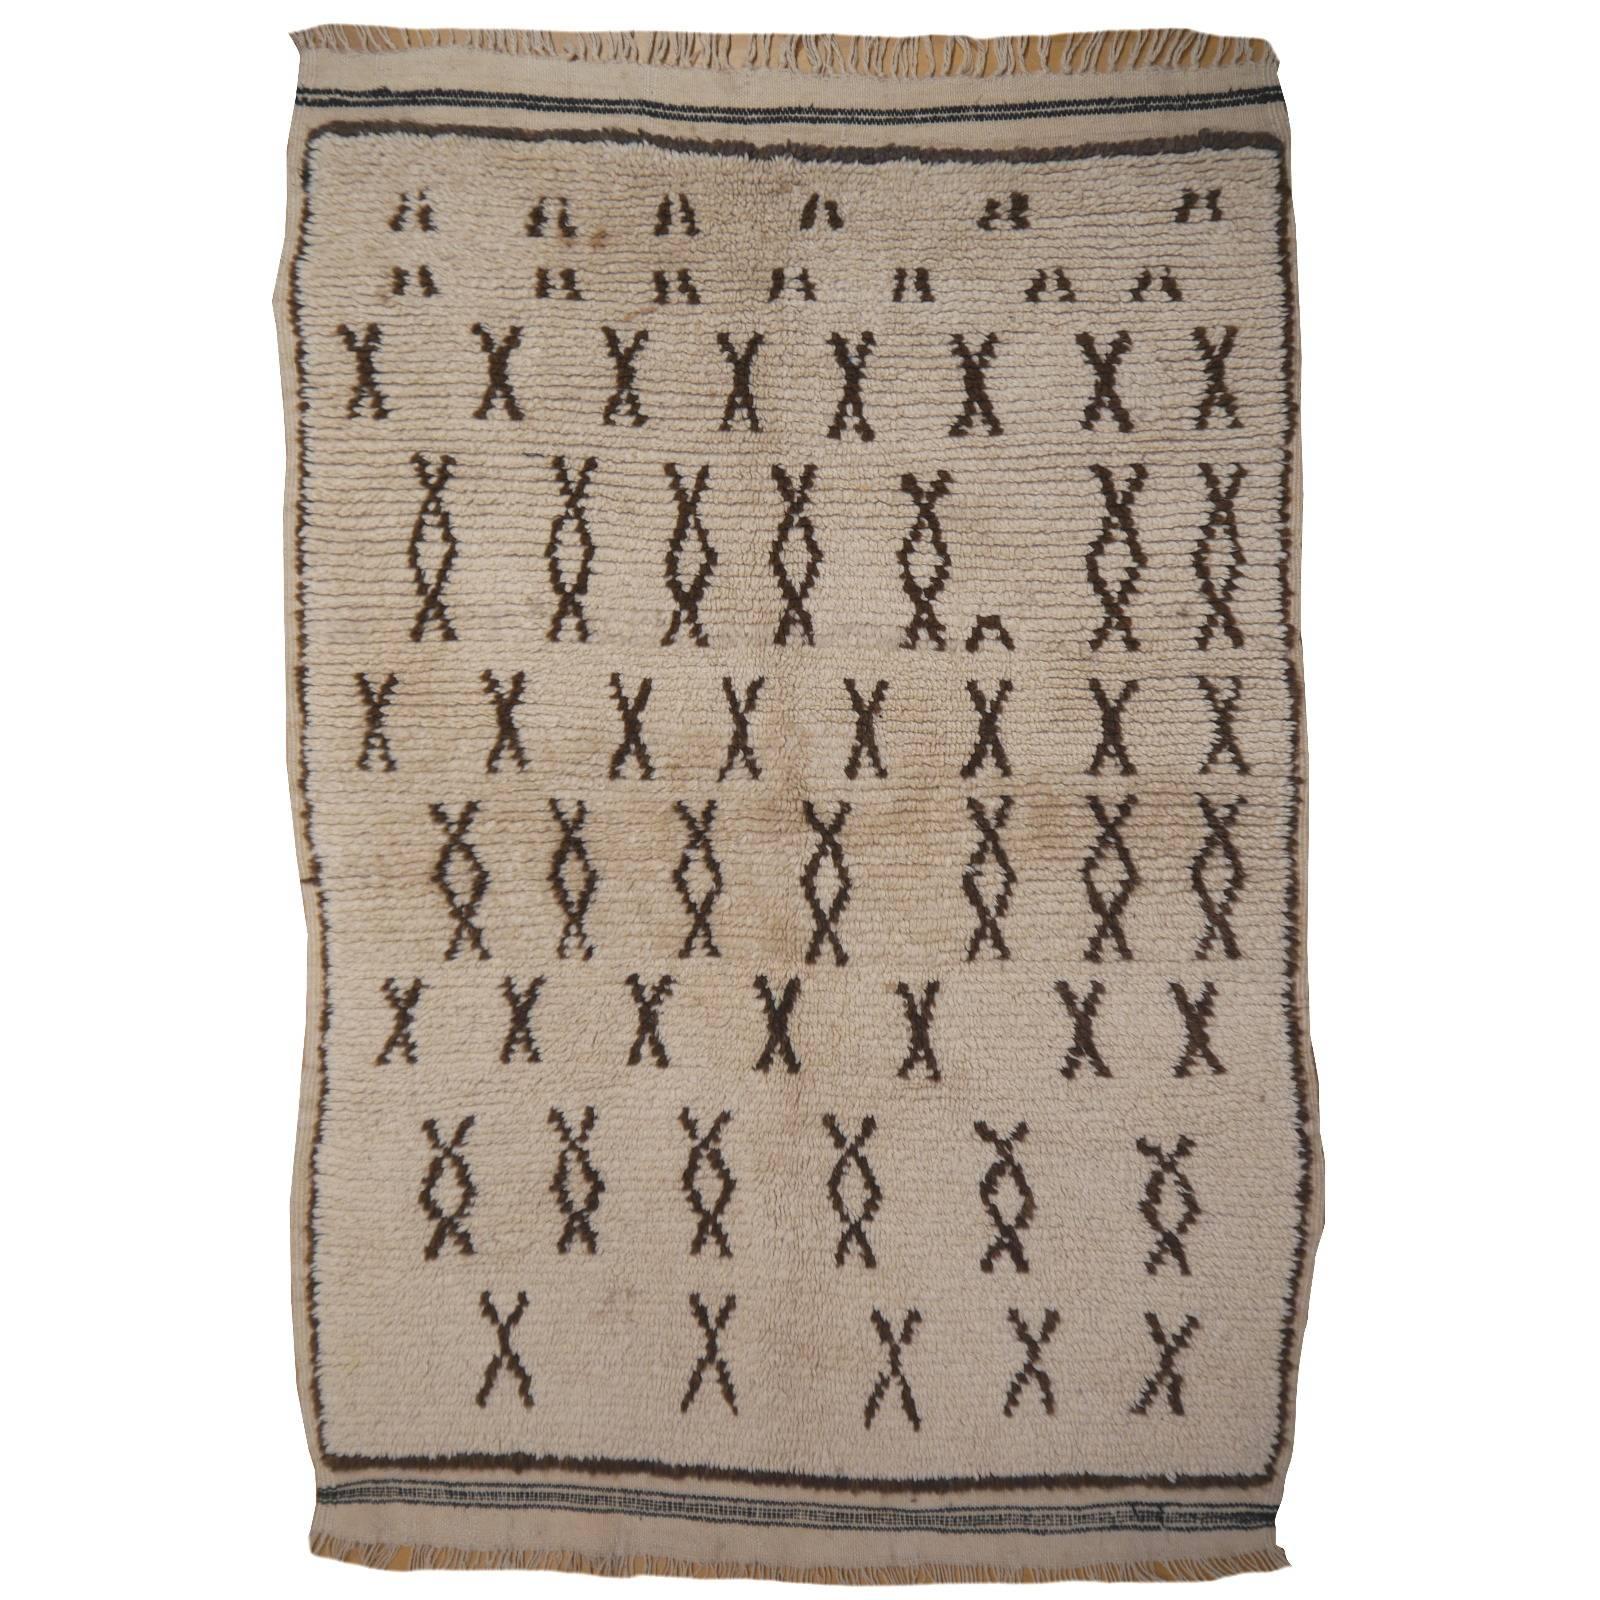 Vintage Moroccan Berber Rug Beige Brown North African Tribal Carpet